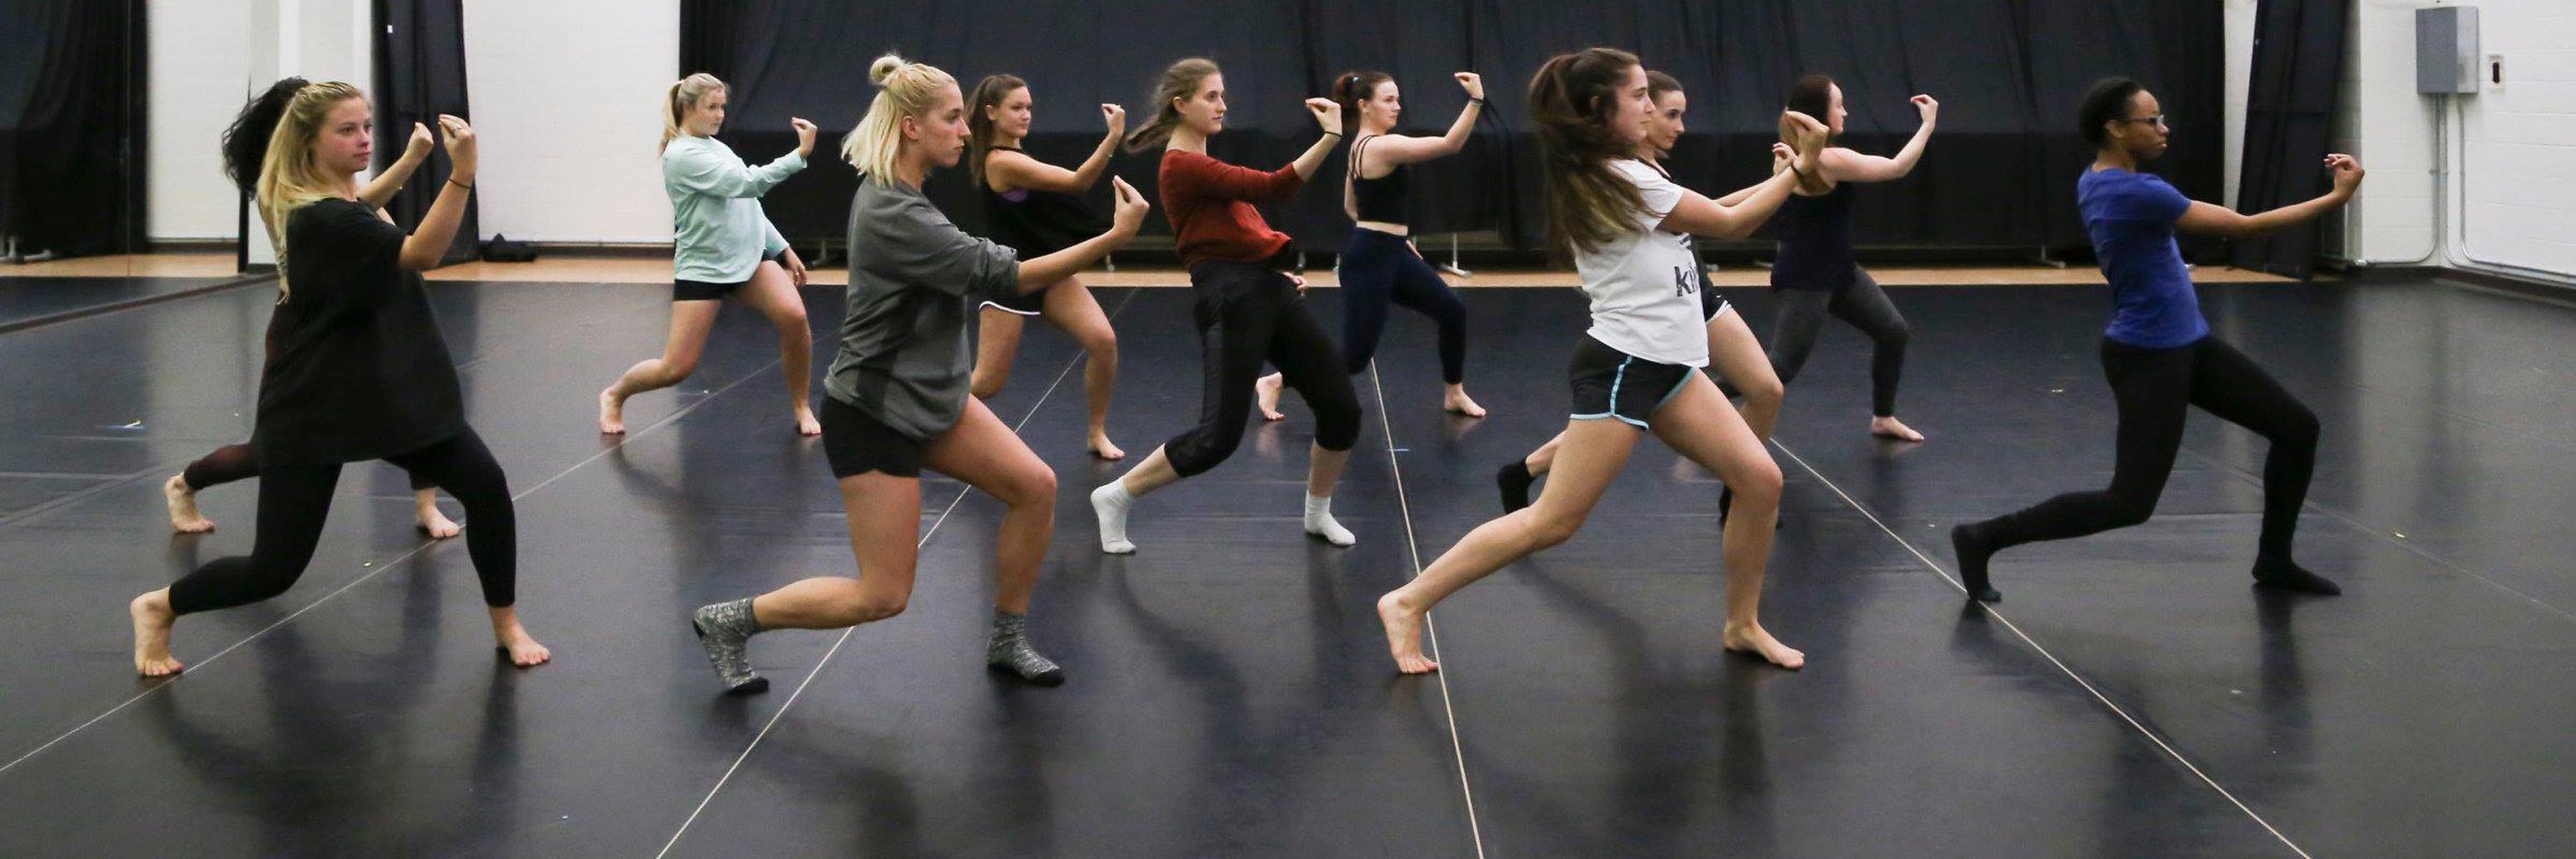 dancers practice